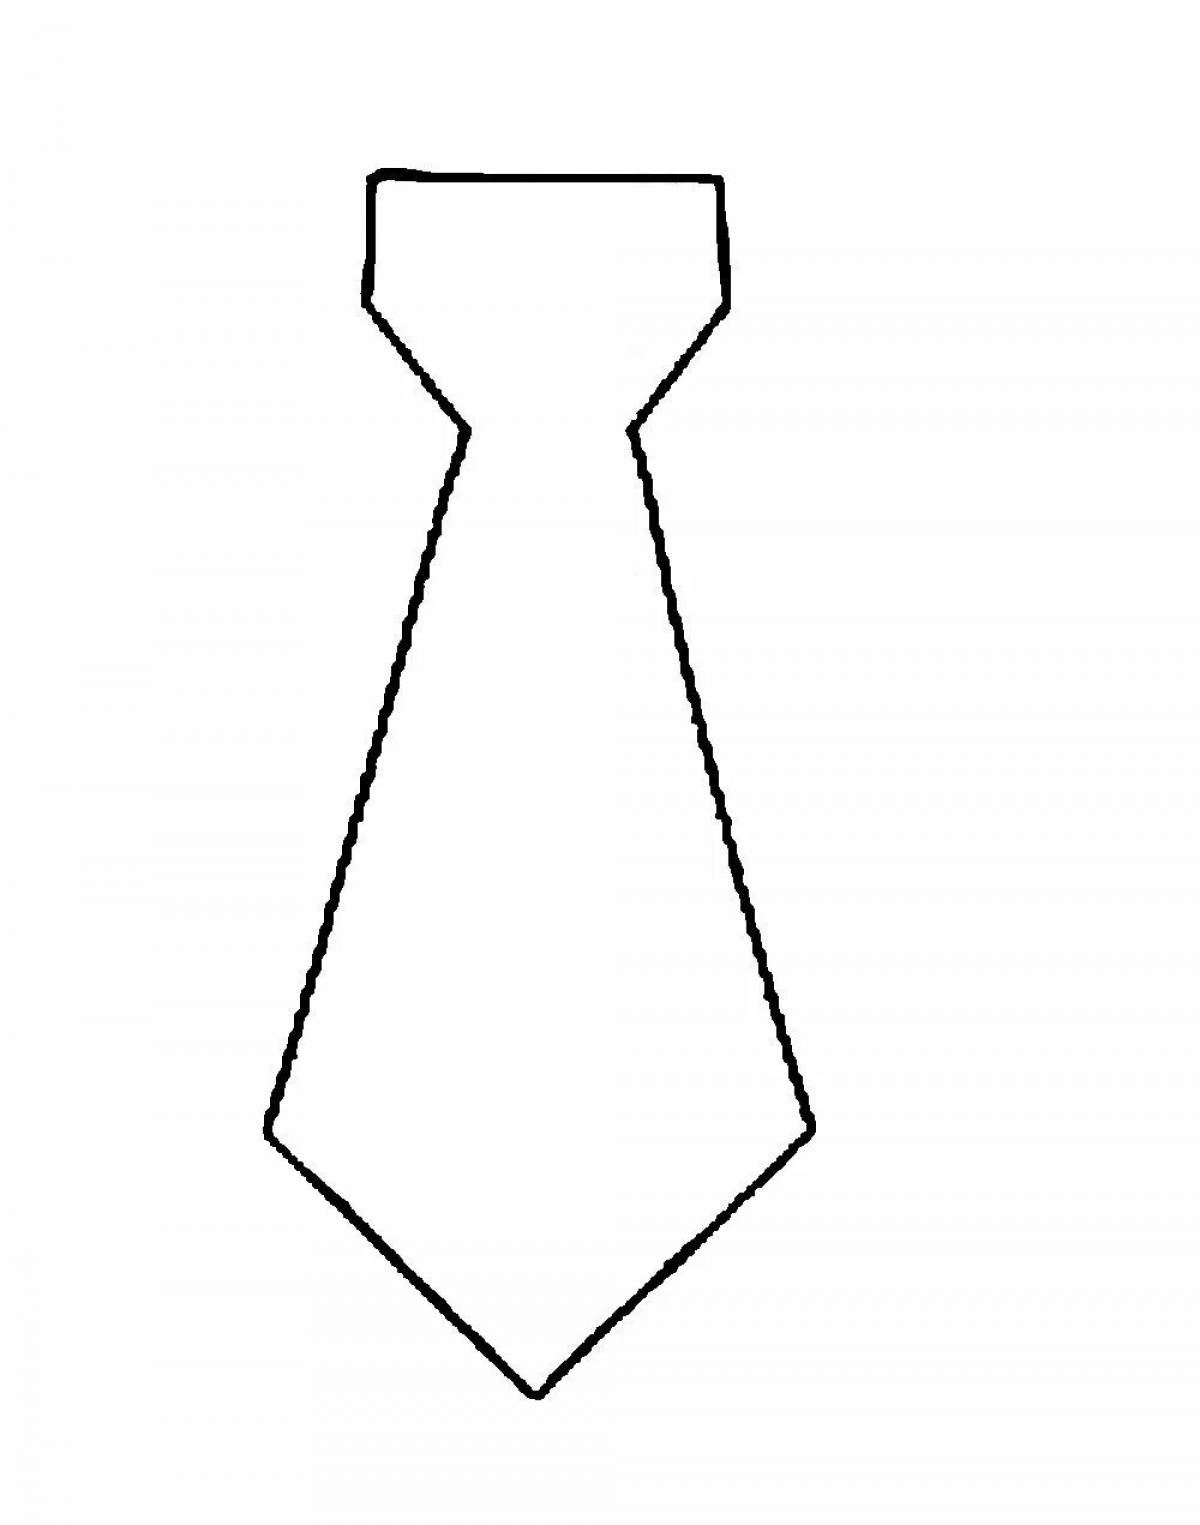 Увлекательная раскраска галстука для папы